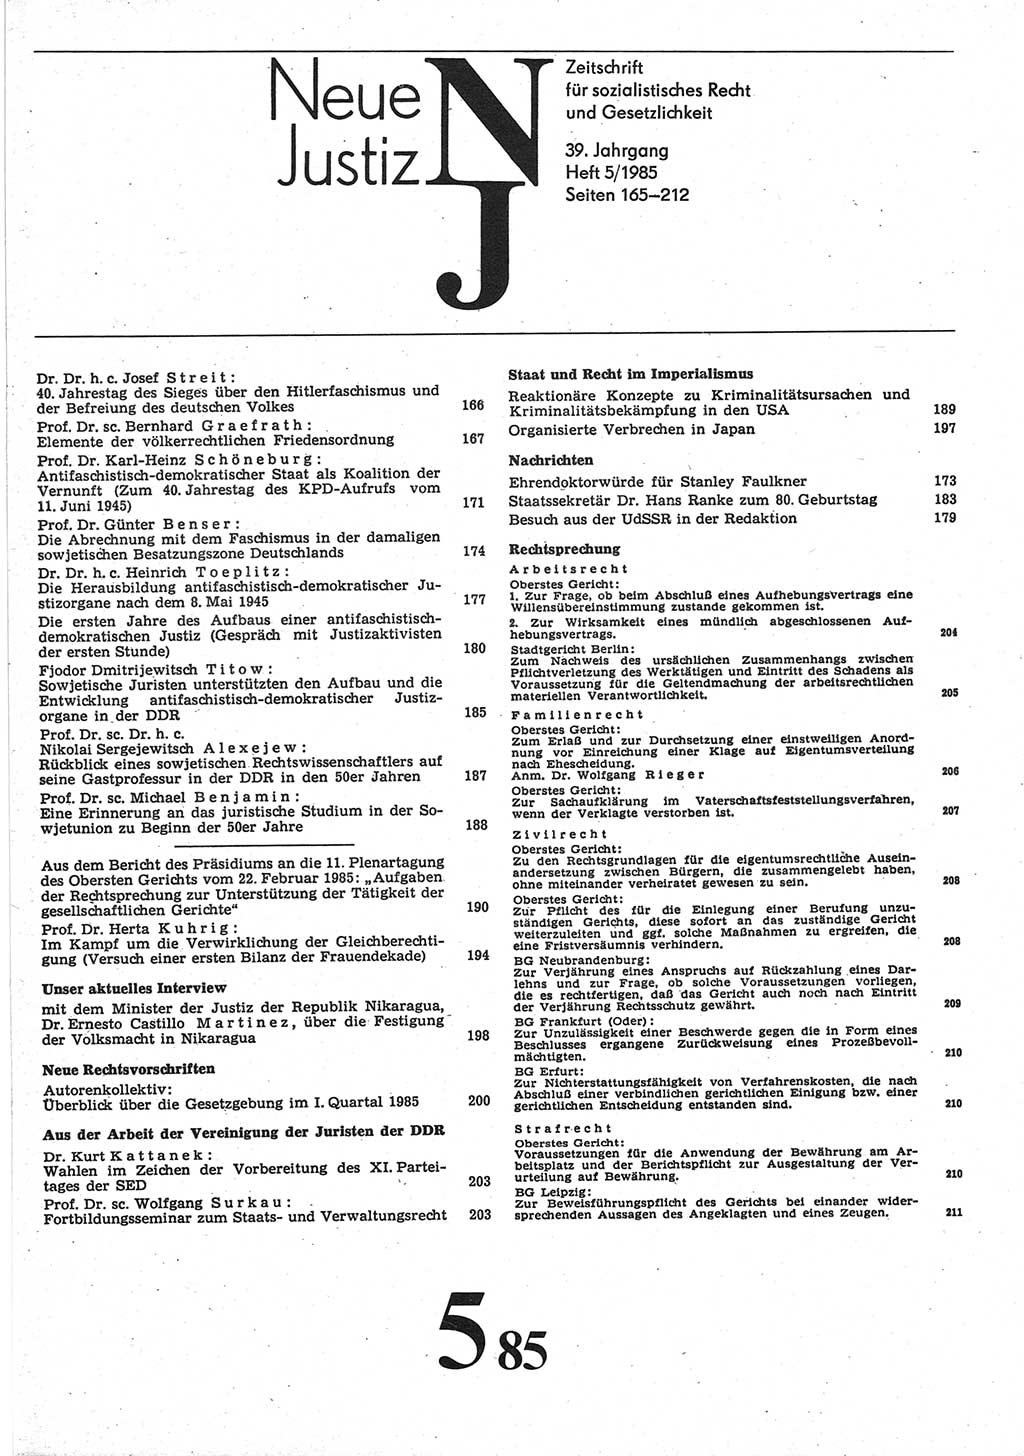 Neue Justiz (NJ), Zeitschrift für sozialistisches Recht und Gesetzlichkeit [Deutsche Demokratische Republik (DDR)], 39. Jahrgang 1985, Seite 165 (NJ DDR 1985, S. 165)